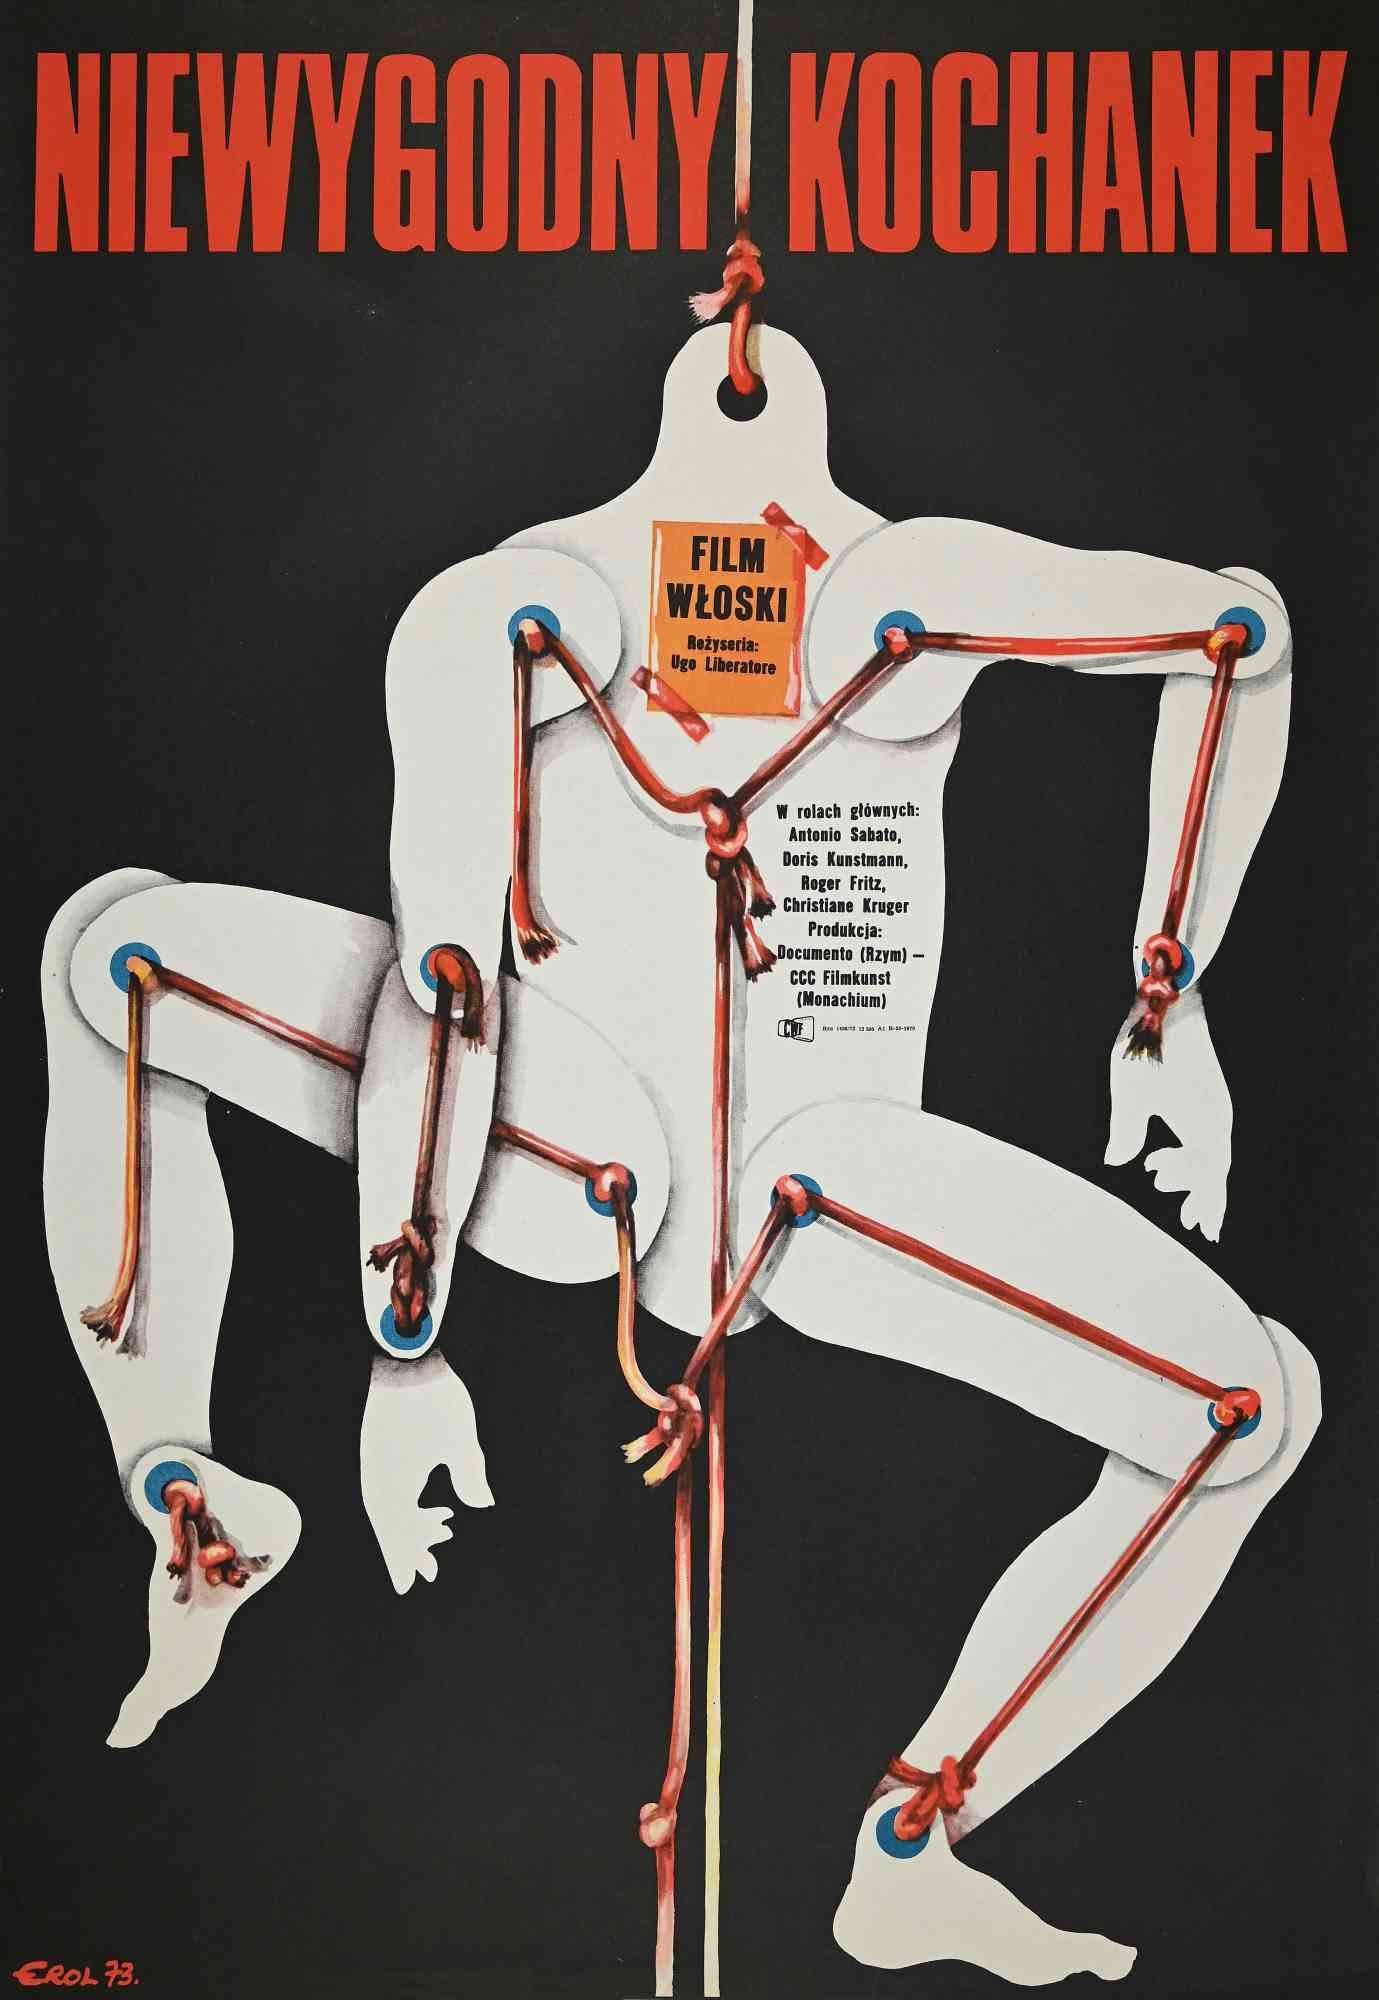 Niewygodny Kochanek – Vintage-Plakat, 1973